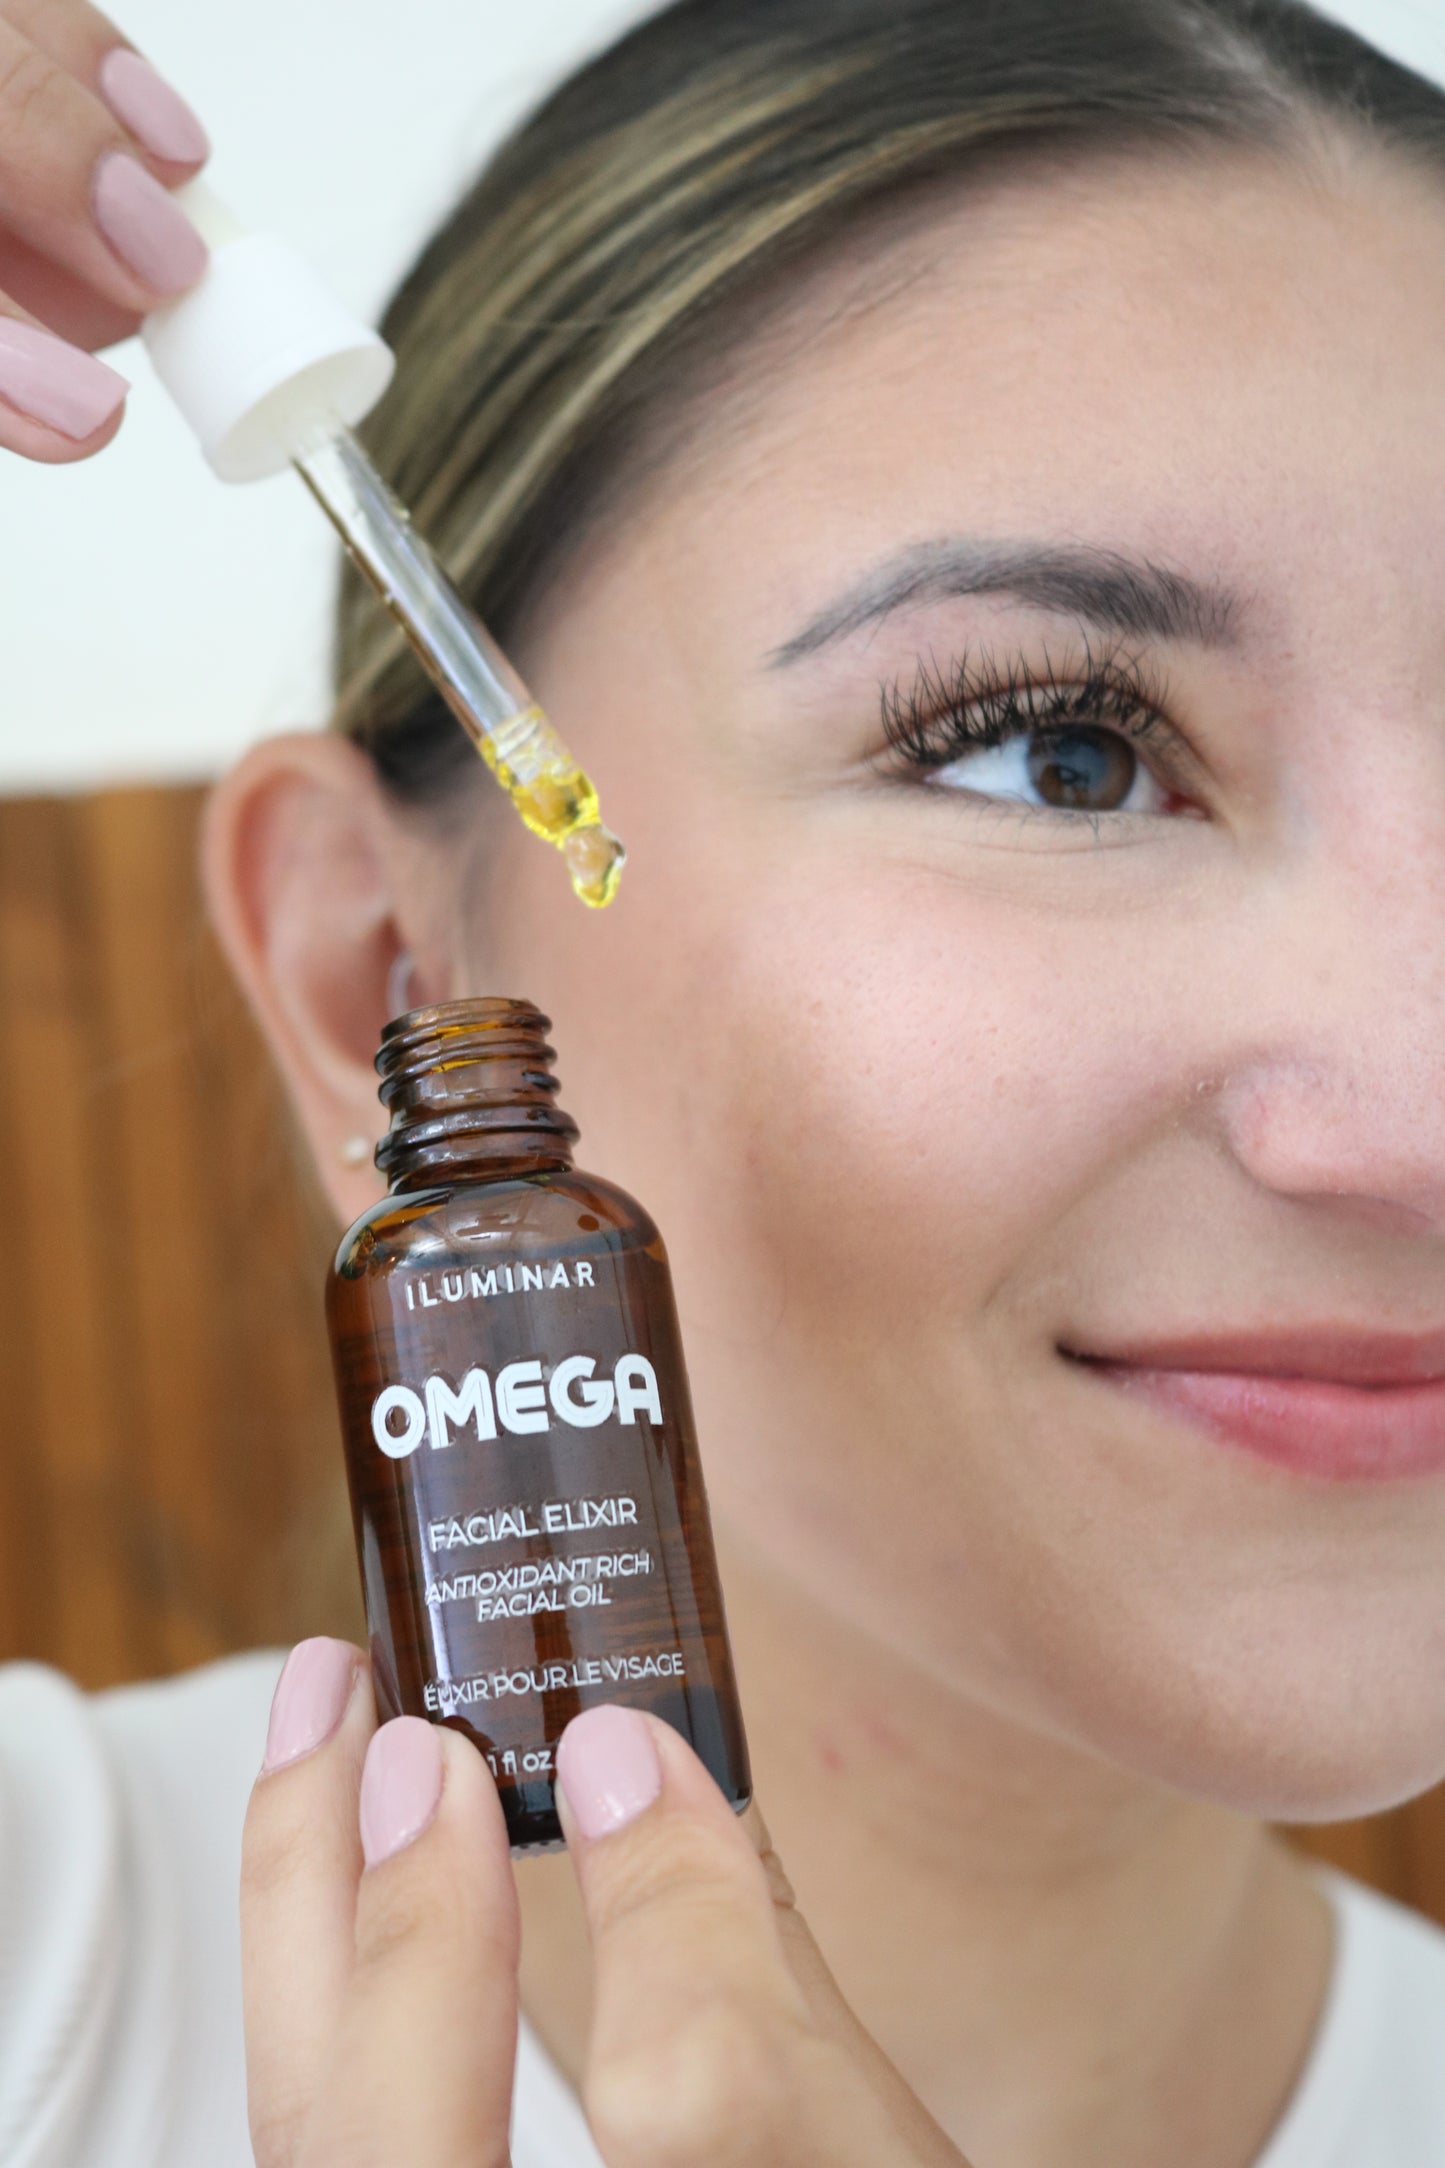 Omega Facial Elixir